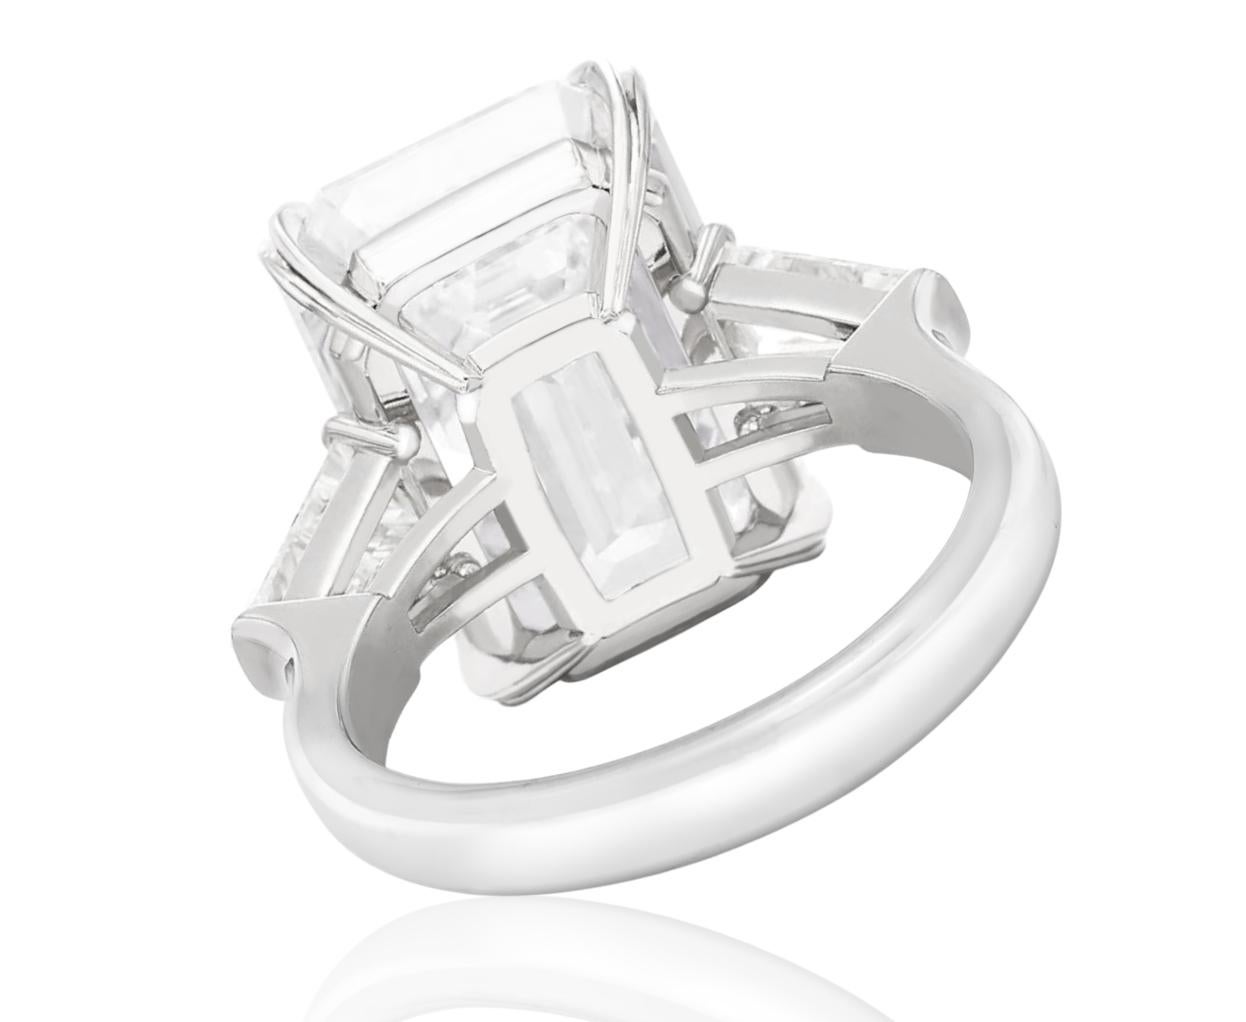 Antinori Fine Jewels est fière d'offrir cette importante et impressionnante pièce de 6 carats certifiée GIA.  Bague en diamant de taille émeraude. 

La bague se compose d'un diamant de taille émeraude pesant 6 carats accompagné d'un rapport GIA. La